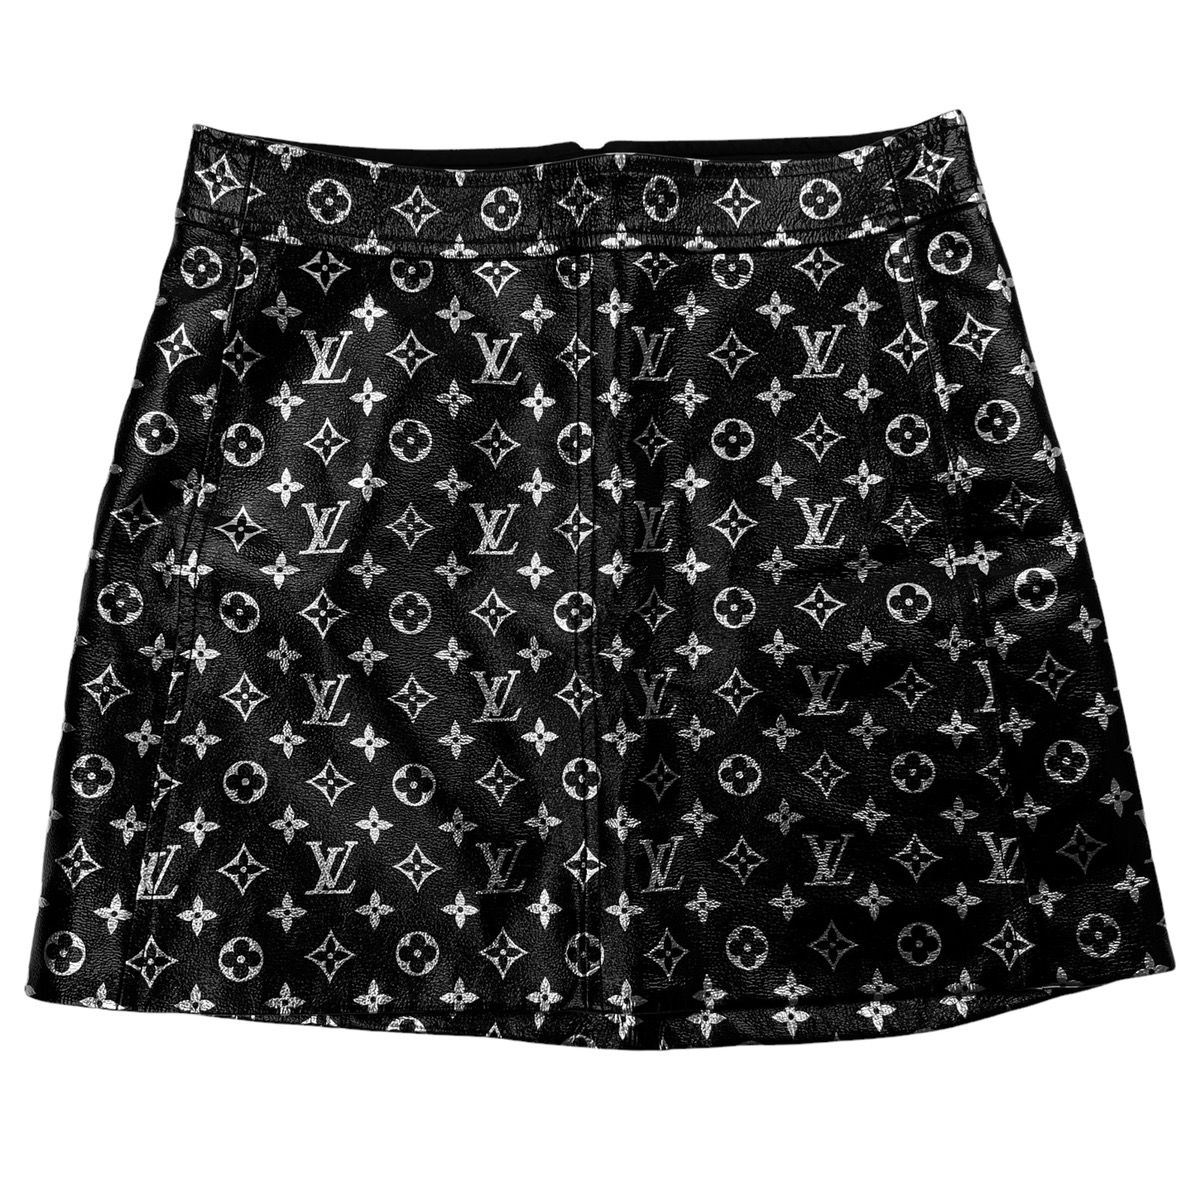 Louis Vuitton Louis Vuitton Monogram Printed Leather Mini Skirt